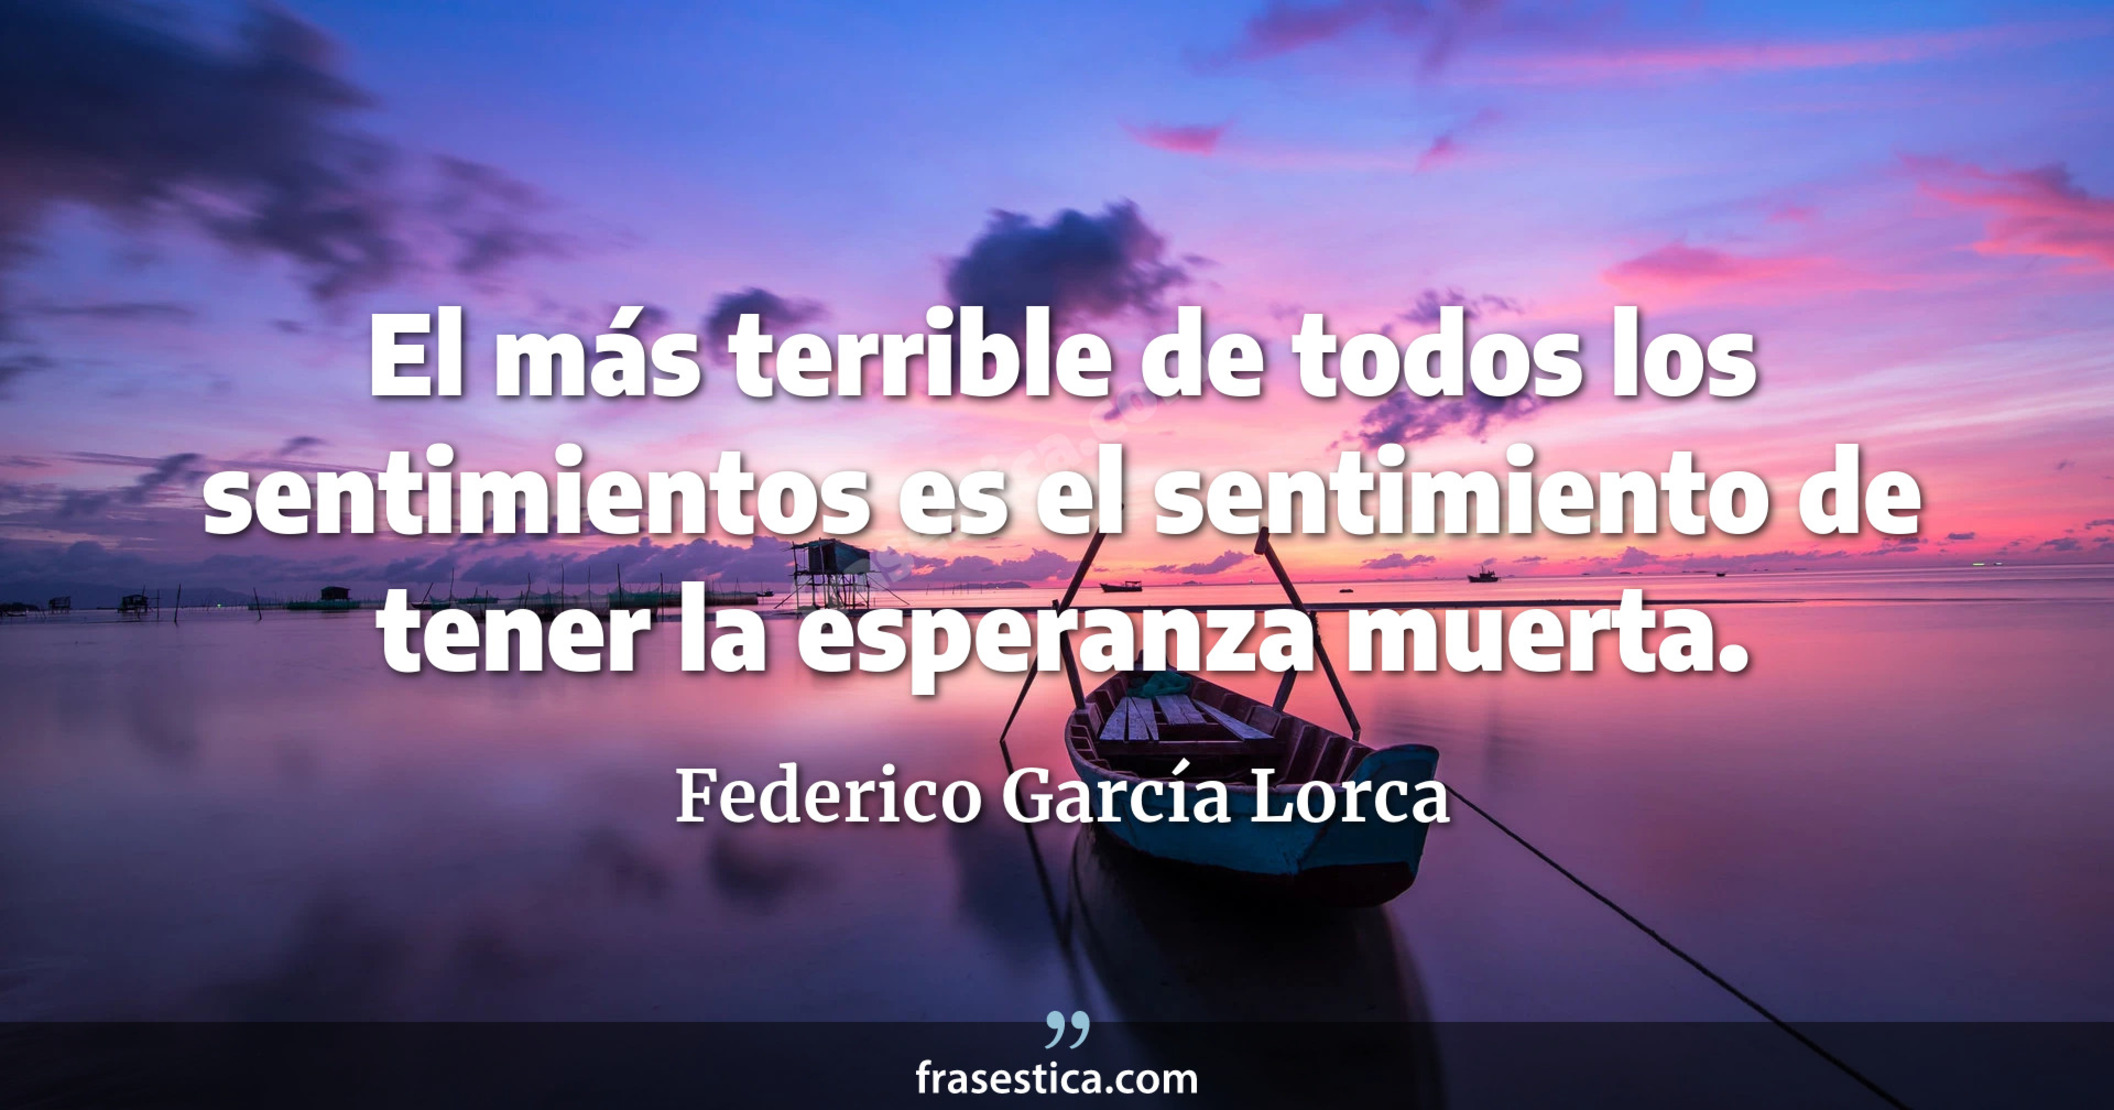 El más terrible de todos los sentimientos es el sentimiento de tener la esperanza muerta. - Federico García Lorca